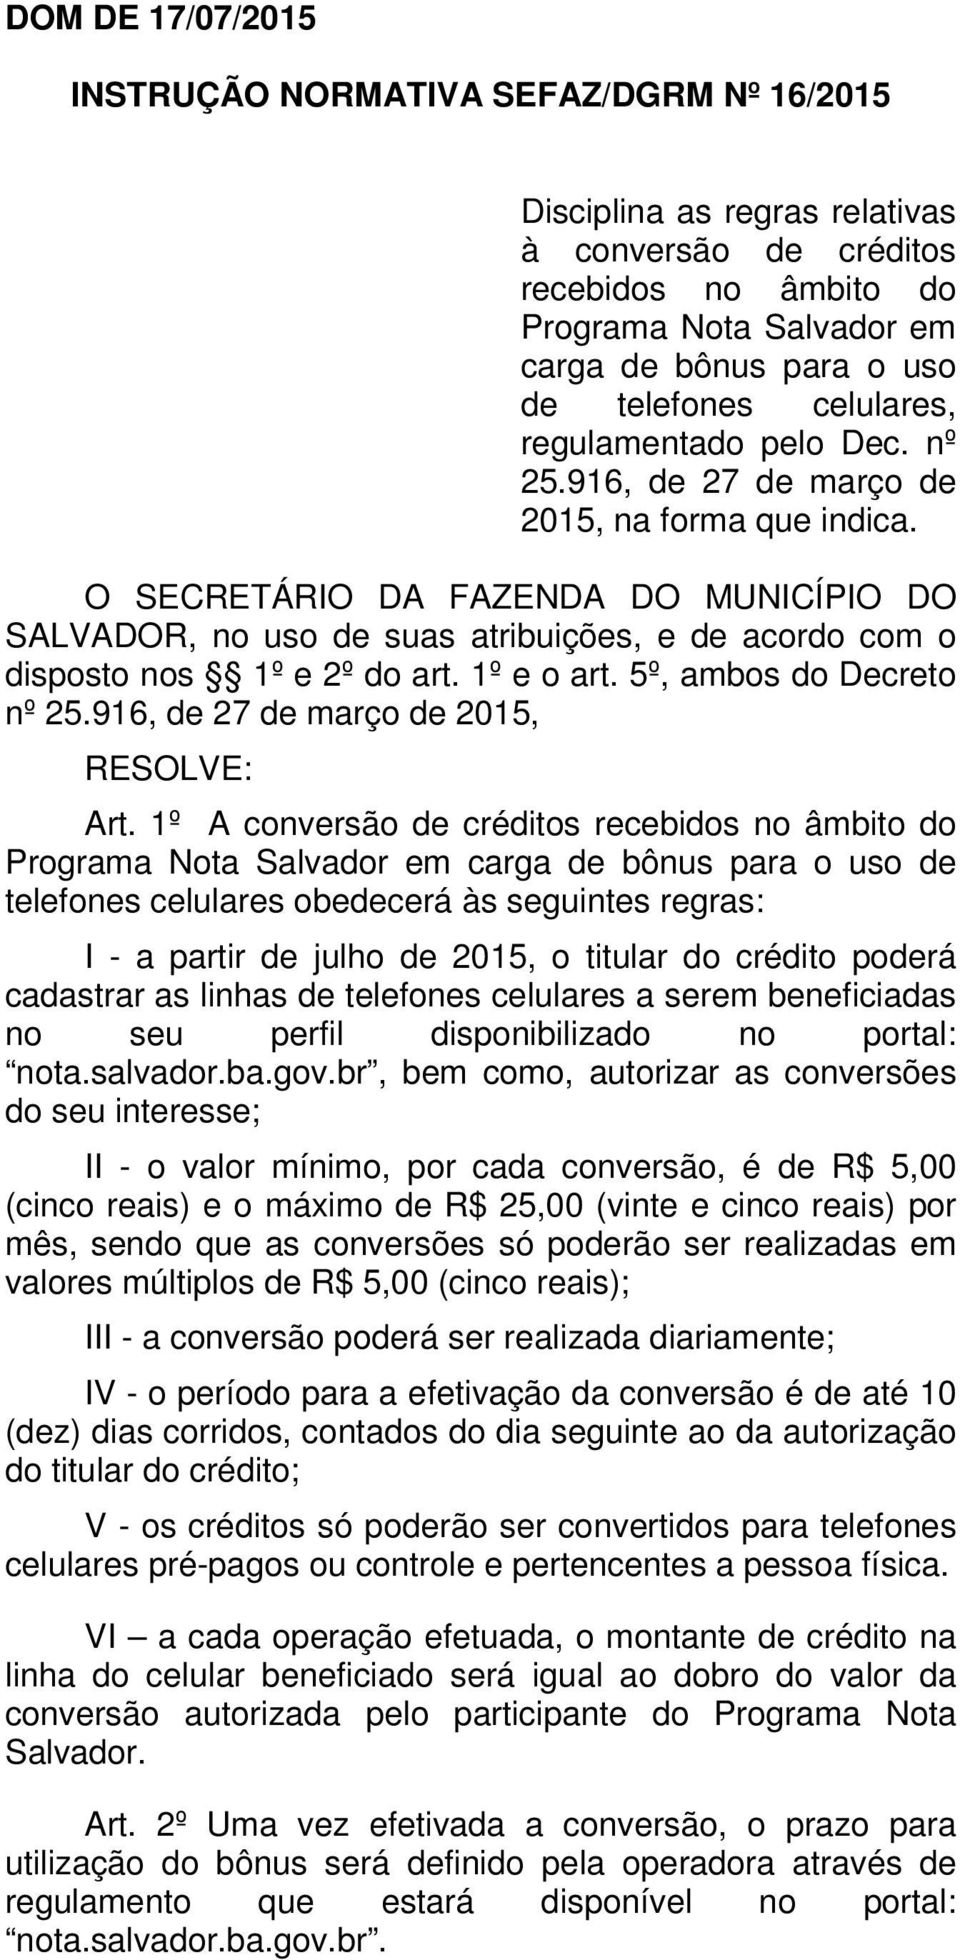 O SECRETÁRIO DA FAZENDA DO MUNICÍPIO DO SALVADOR, no uso de suas atribuições, e de acordo com o disposto nos 1º e 2º do art. 1º e o art. 5º, ambos do Decreto nº 25.